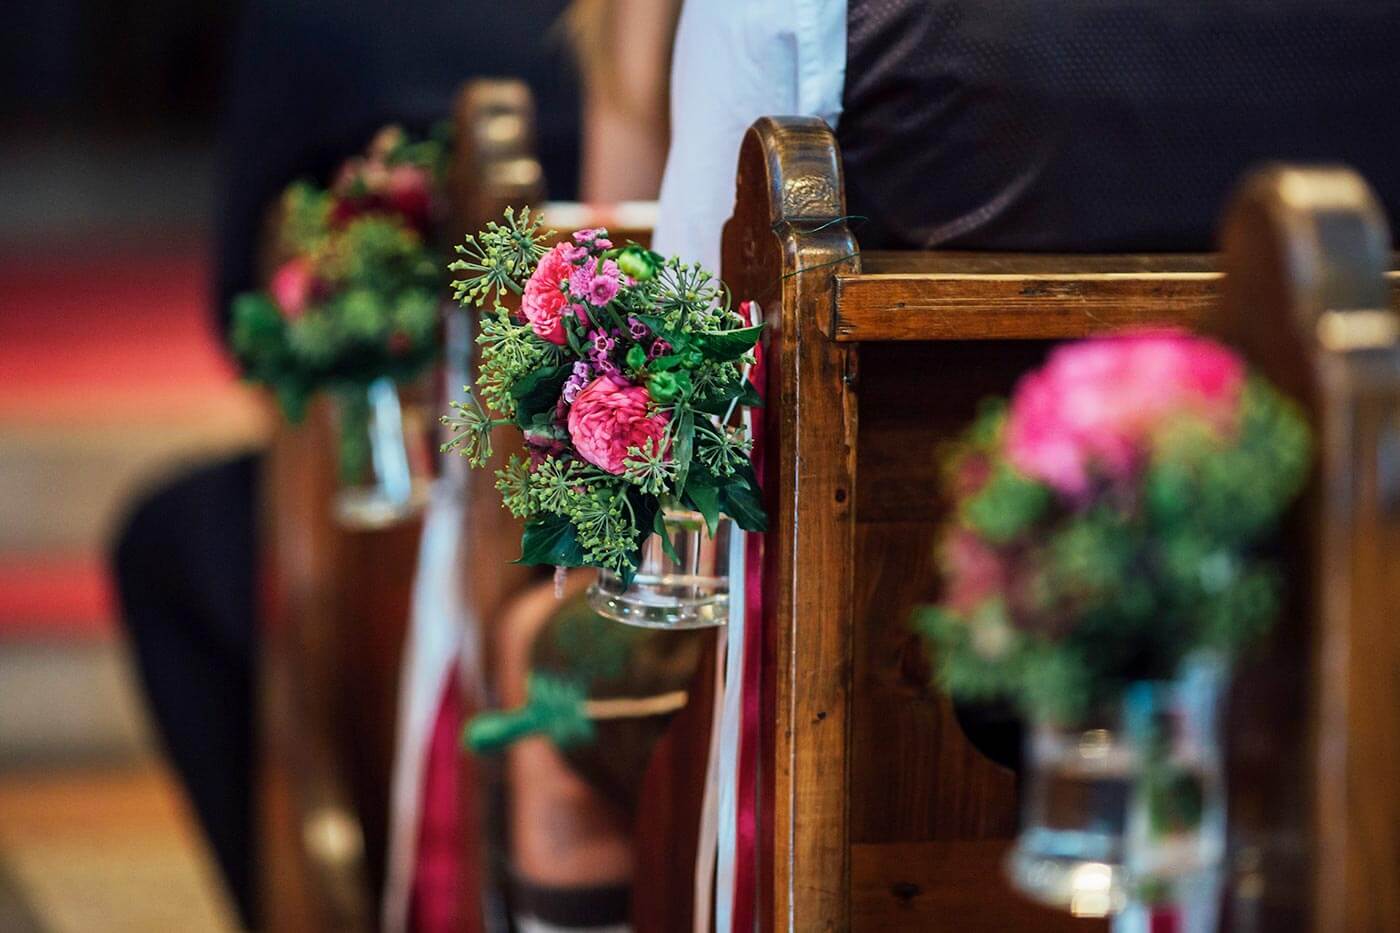 Hochzeitsdekoration kirche selber machen